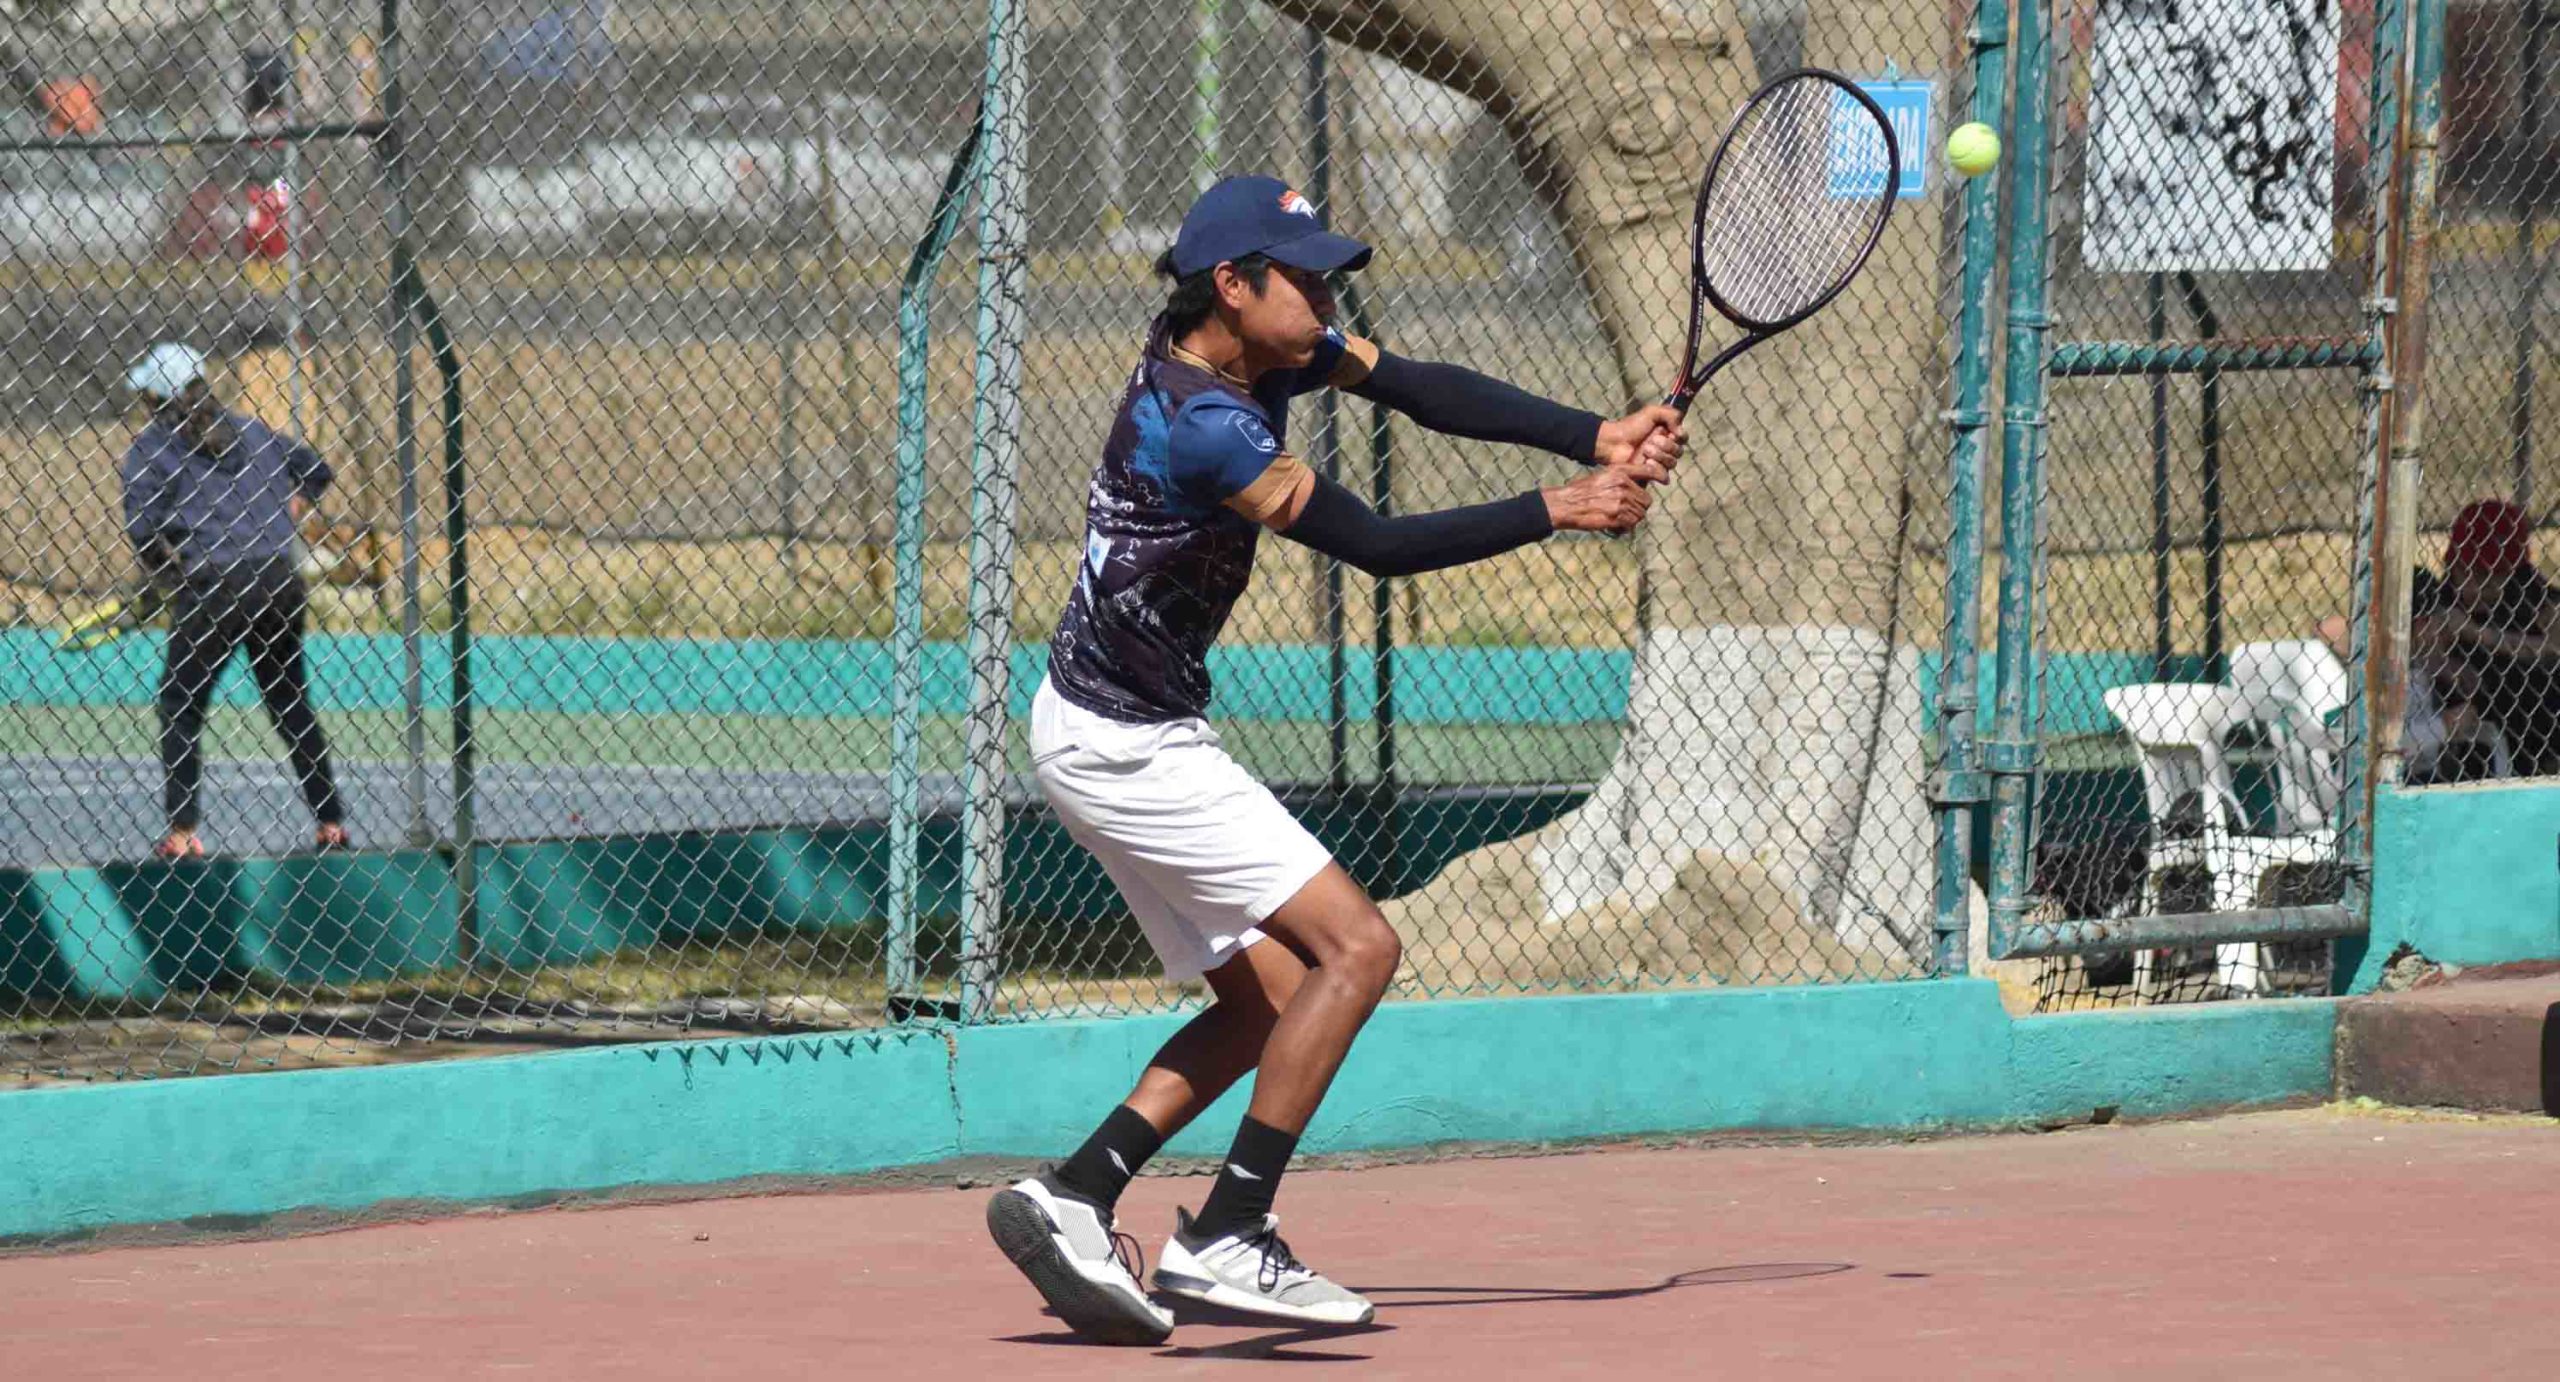 Alistan raquetas para el Torneo Benito Juárez | El Imparcial de Oaxaca